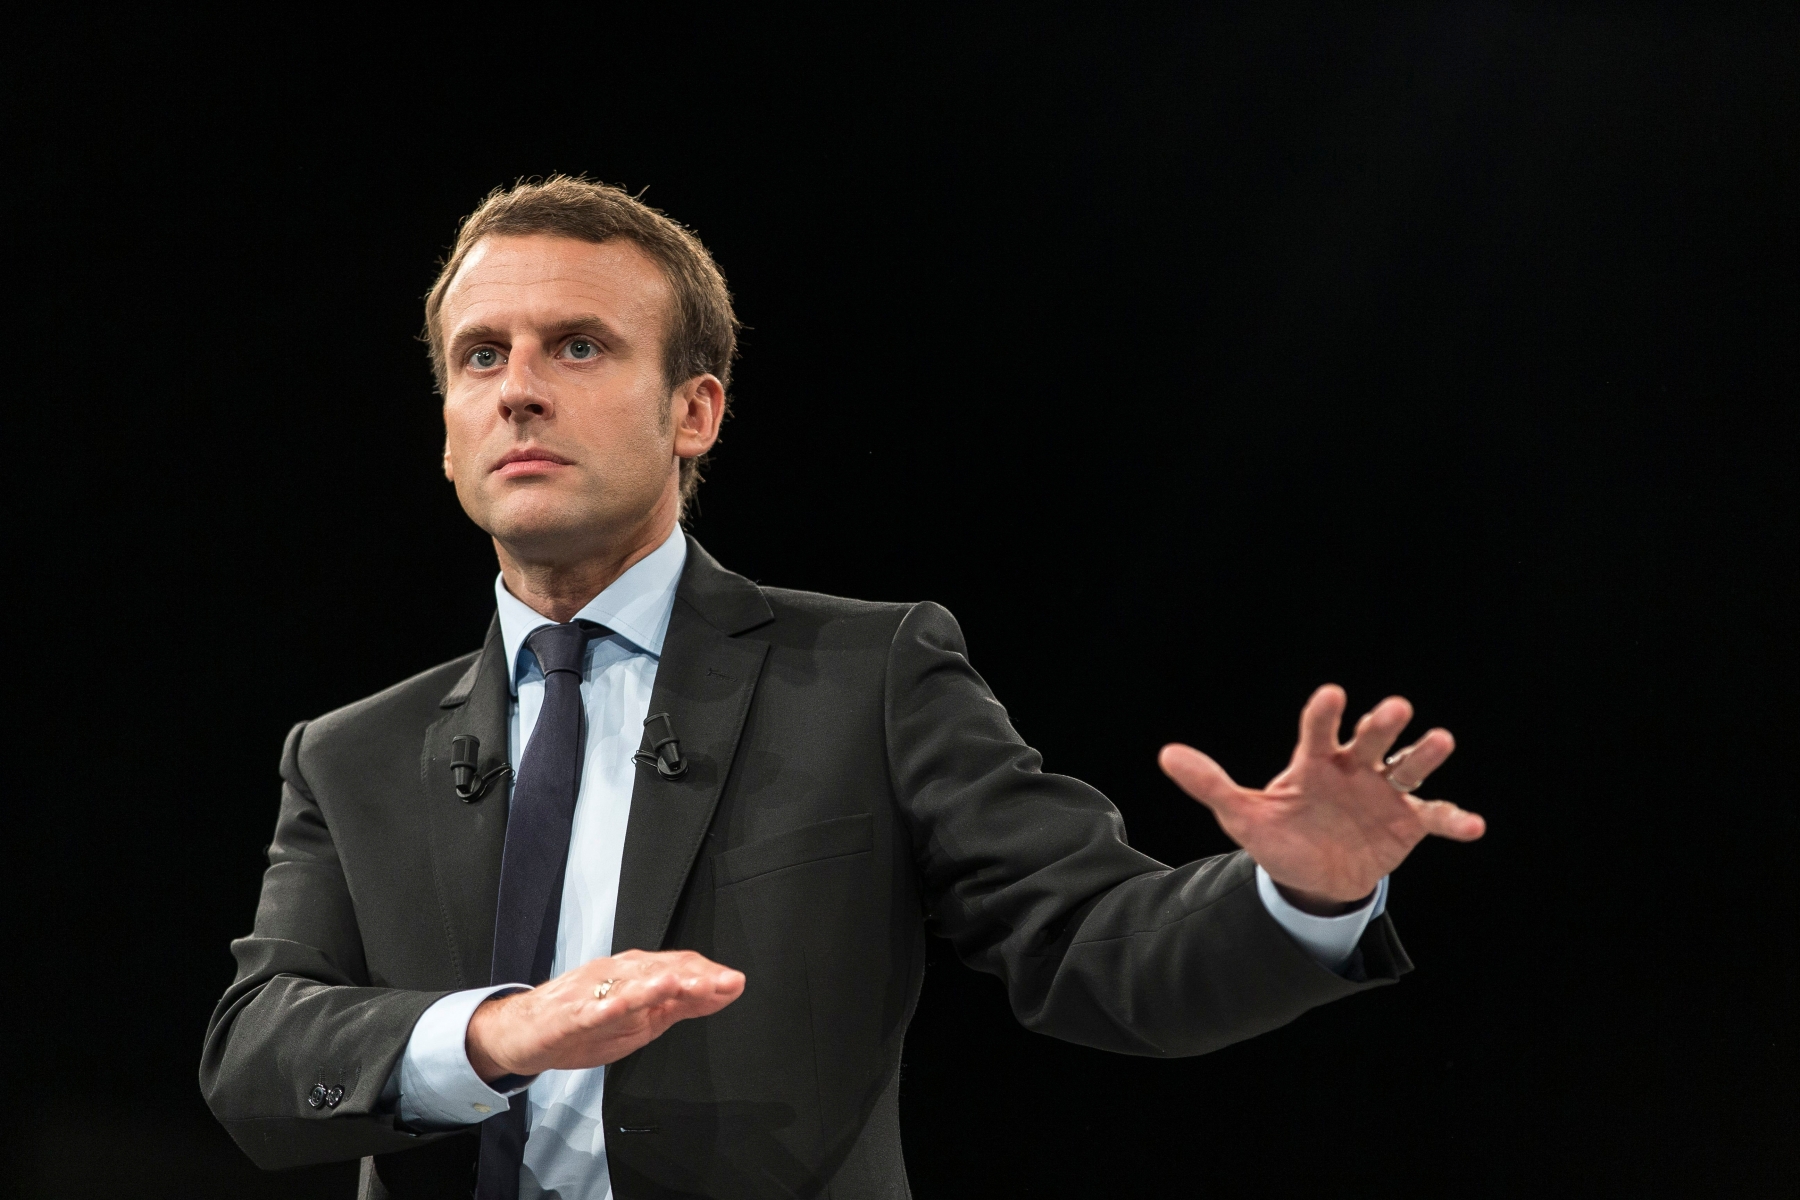 Emmanuel Macron, alors ministre de l'Economie, avait été la vedette de cette manifestation à plus de 380'000 euros, dont 100'000 euros d'hôtel pour les invités, selon les chiffres relevés par le Canard enchaîné.